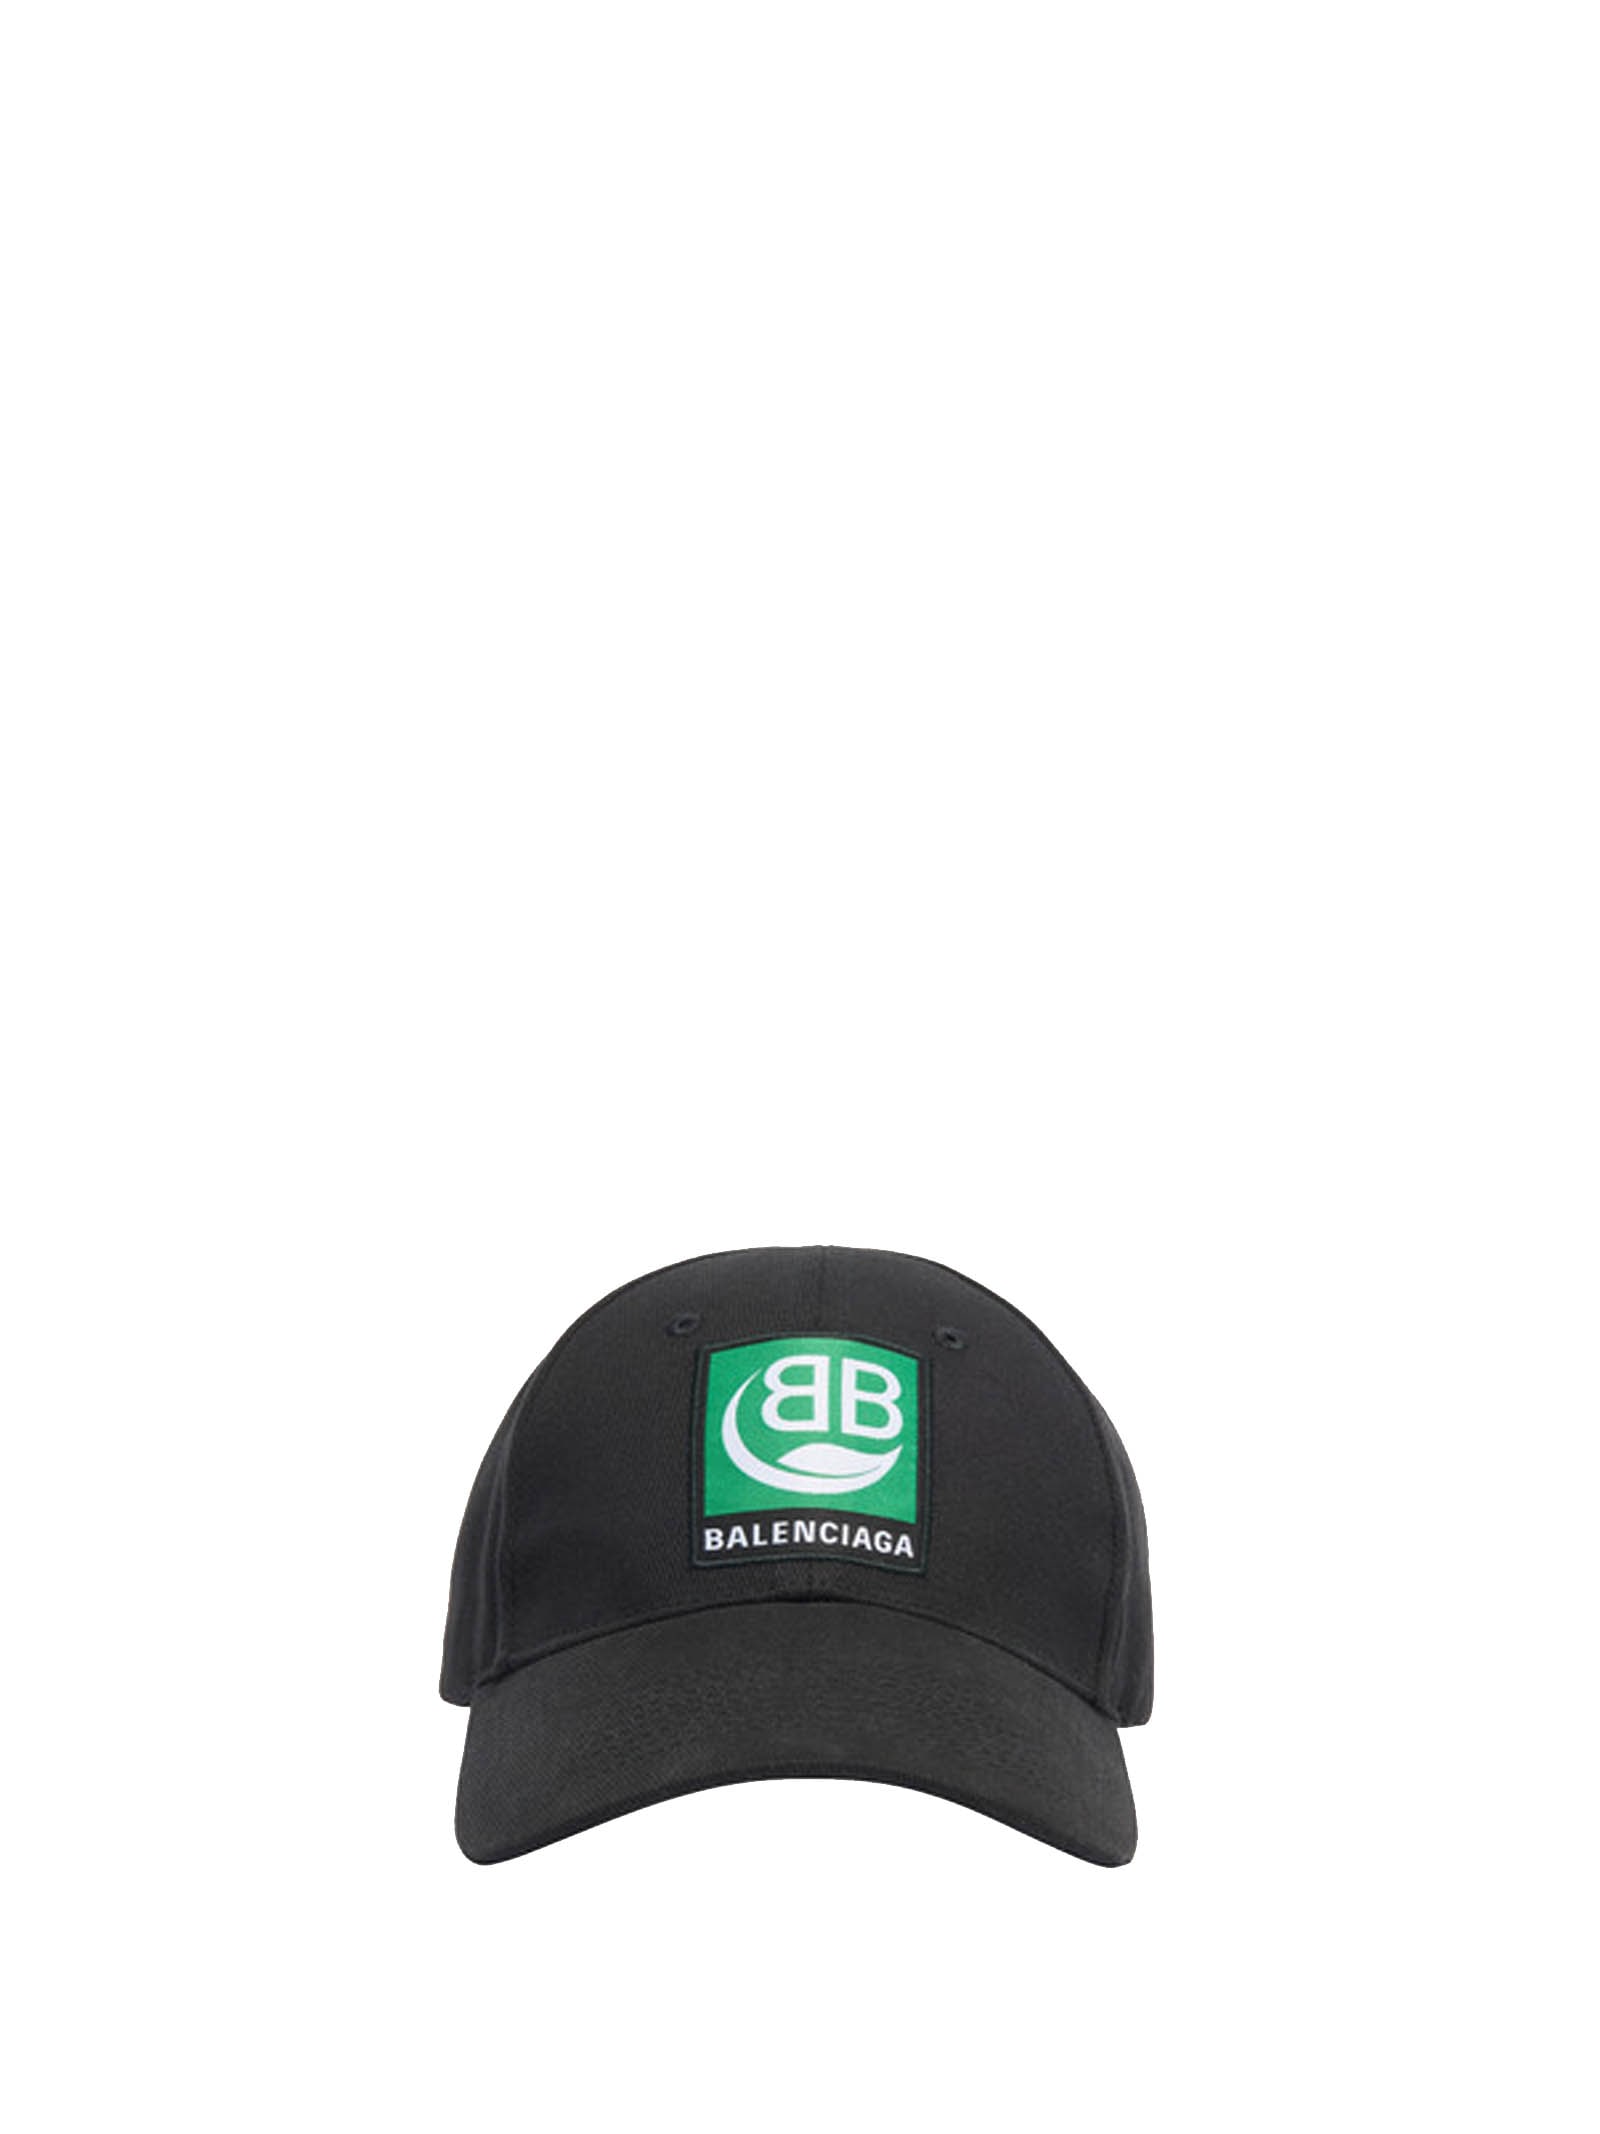 BALENCIAGA GREEN LOGO BASEBALL CAP,11234825